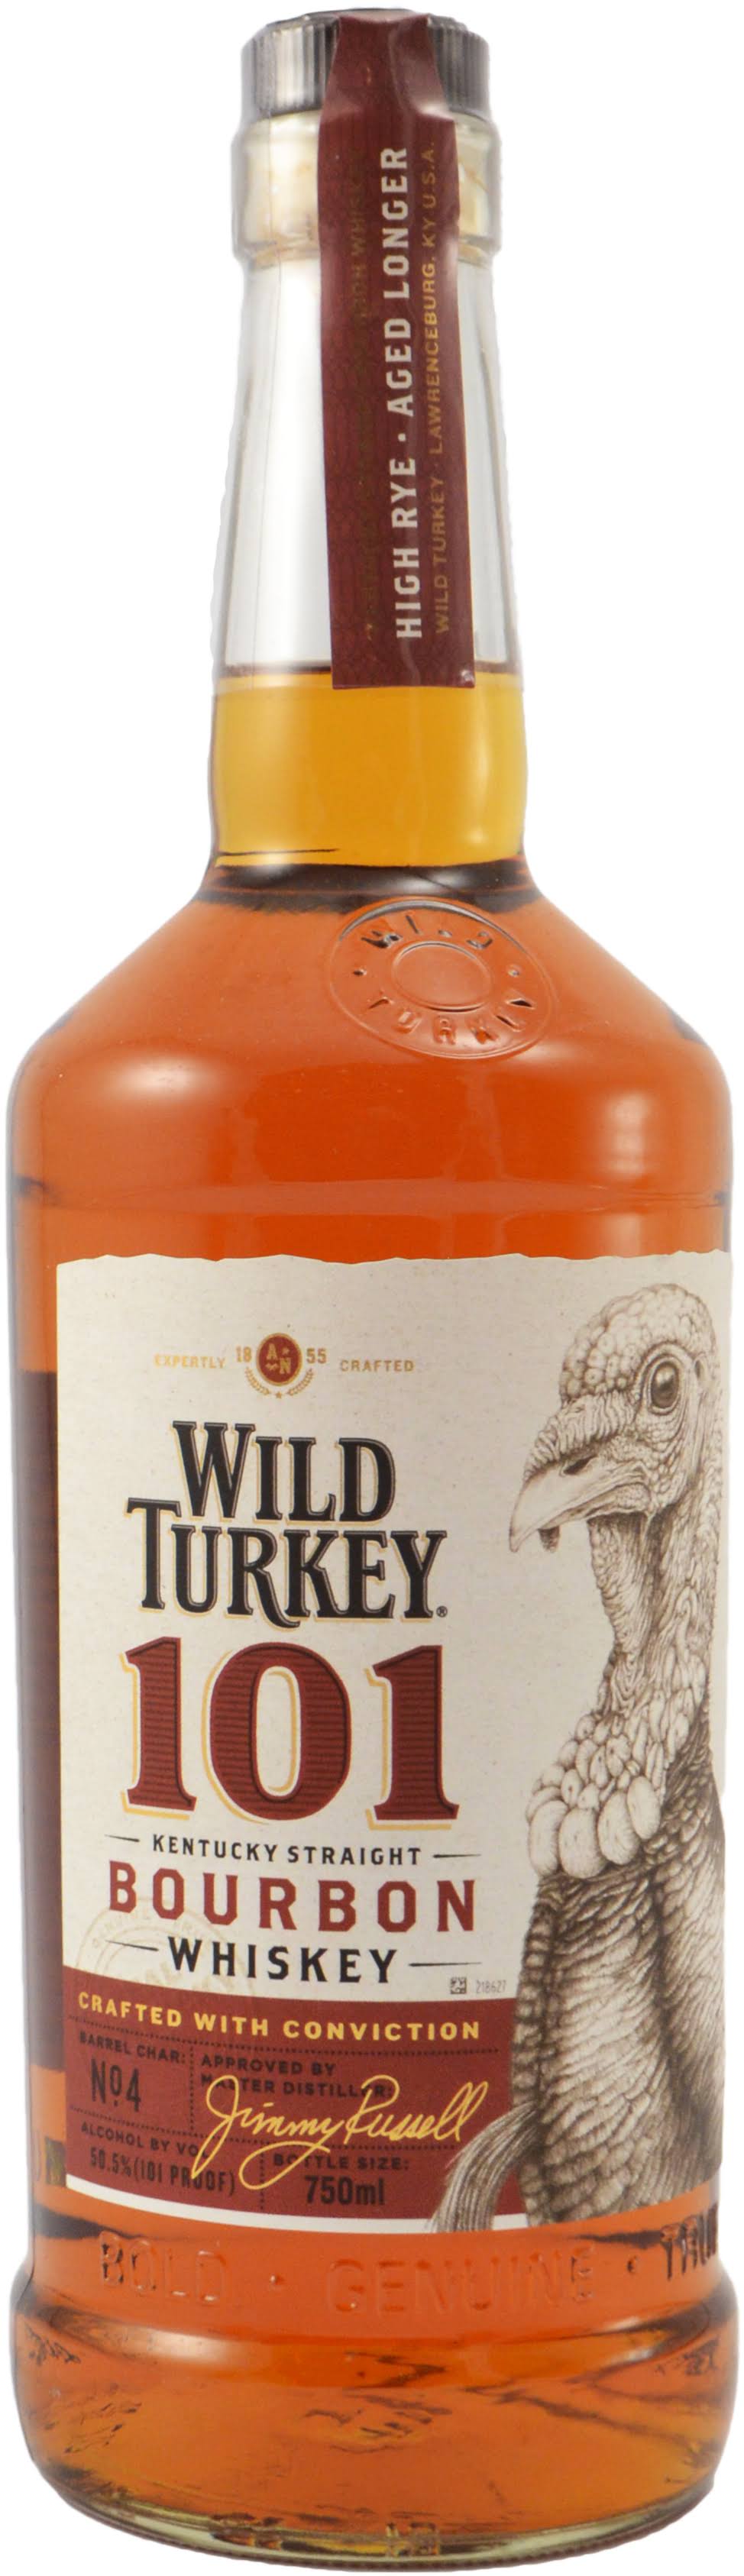 Wild Turkey Whiskey, Kentucky Straight Bourbon, 101 - 750 ml